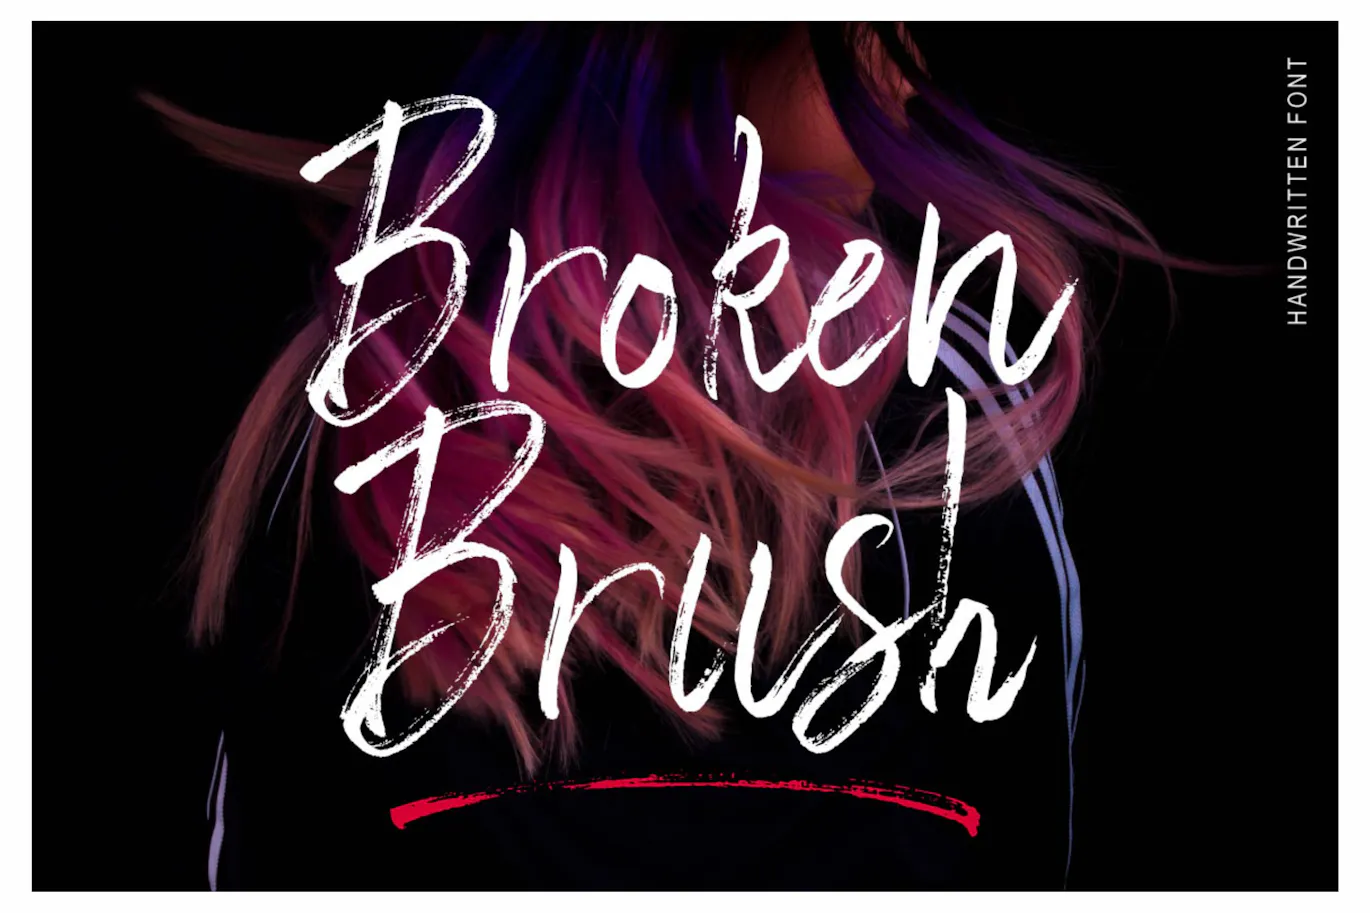 令人惊叹的手写签名风格英文字体 - Broken Brush 设计字体 第8张